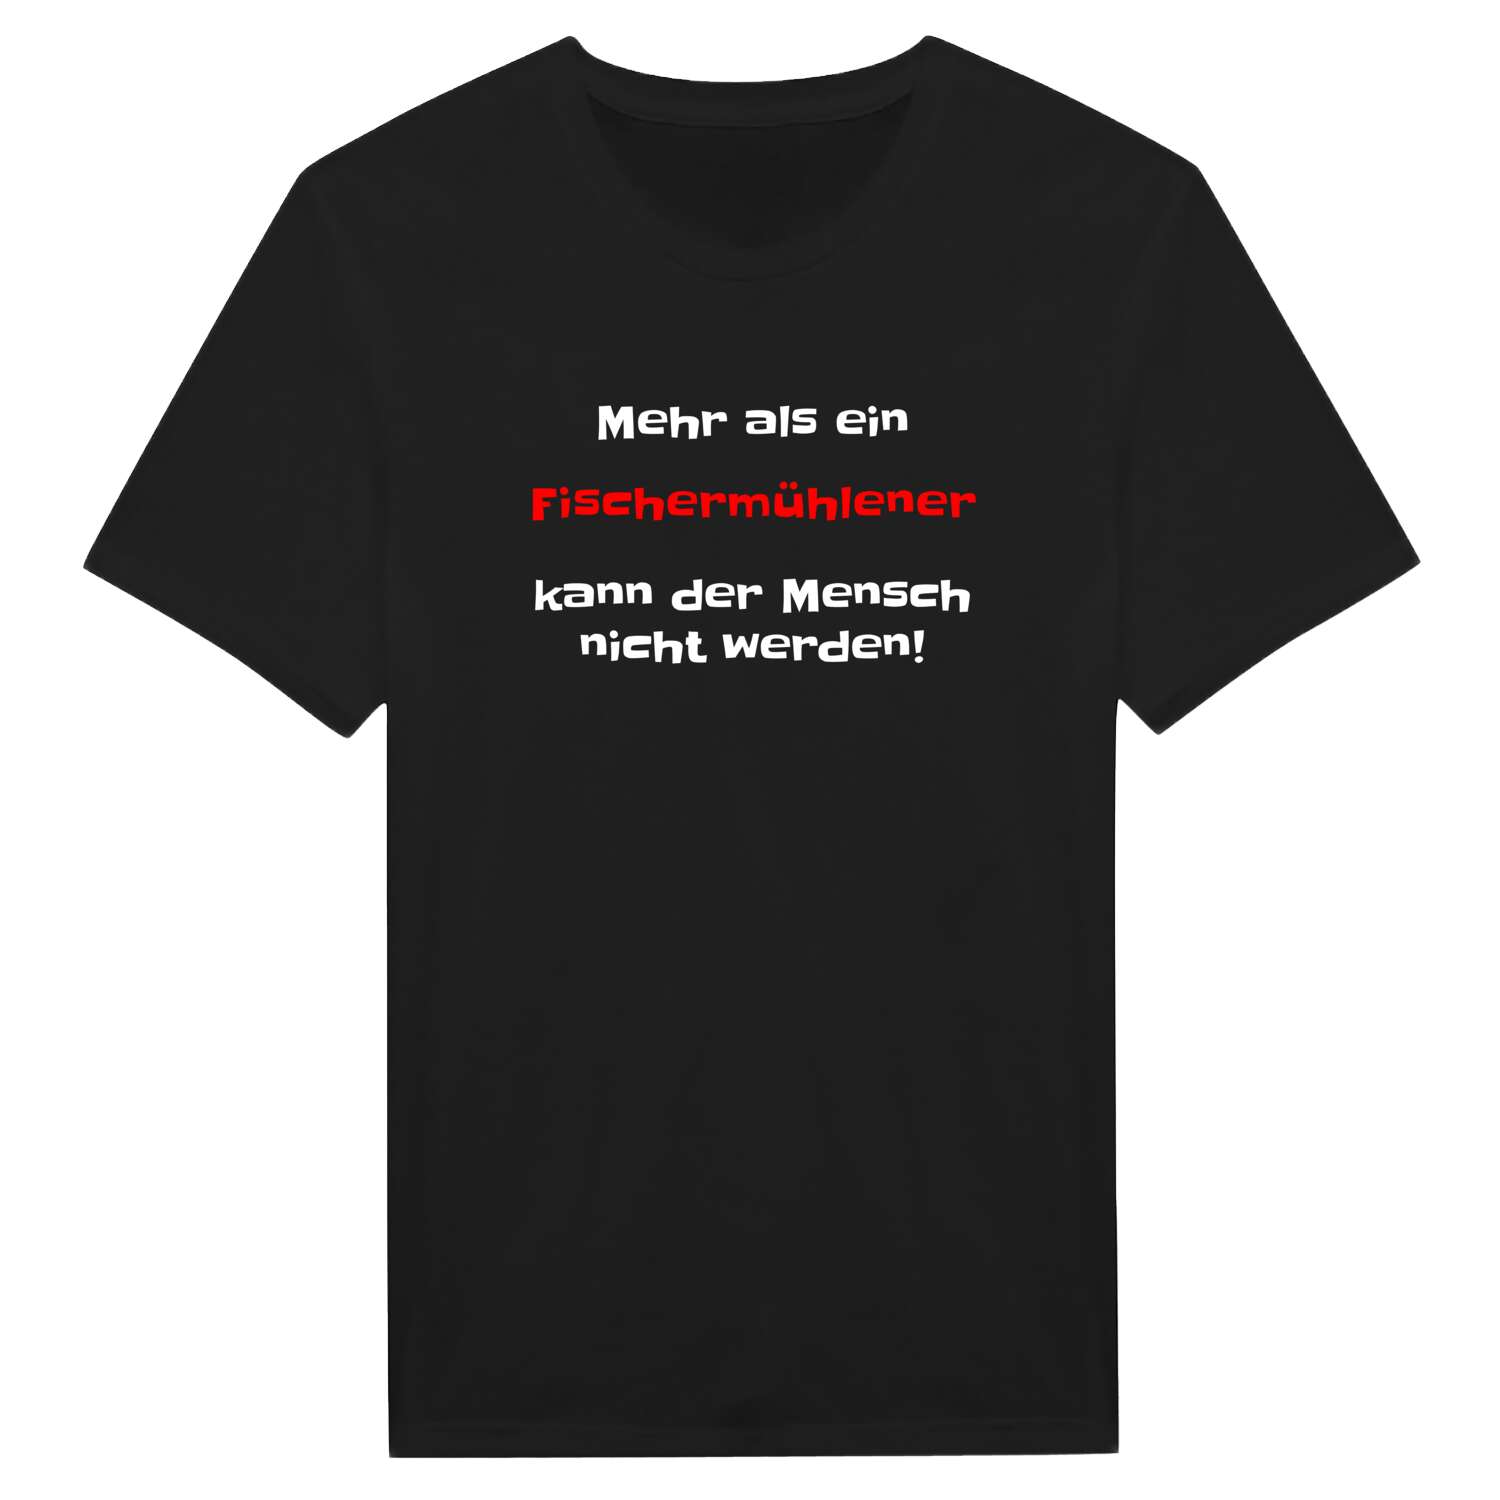 Fischermühle T-Shirt »Mehr als ein«